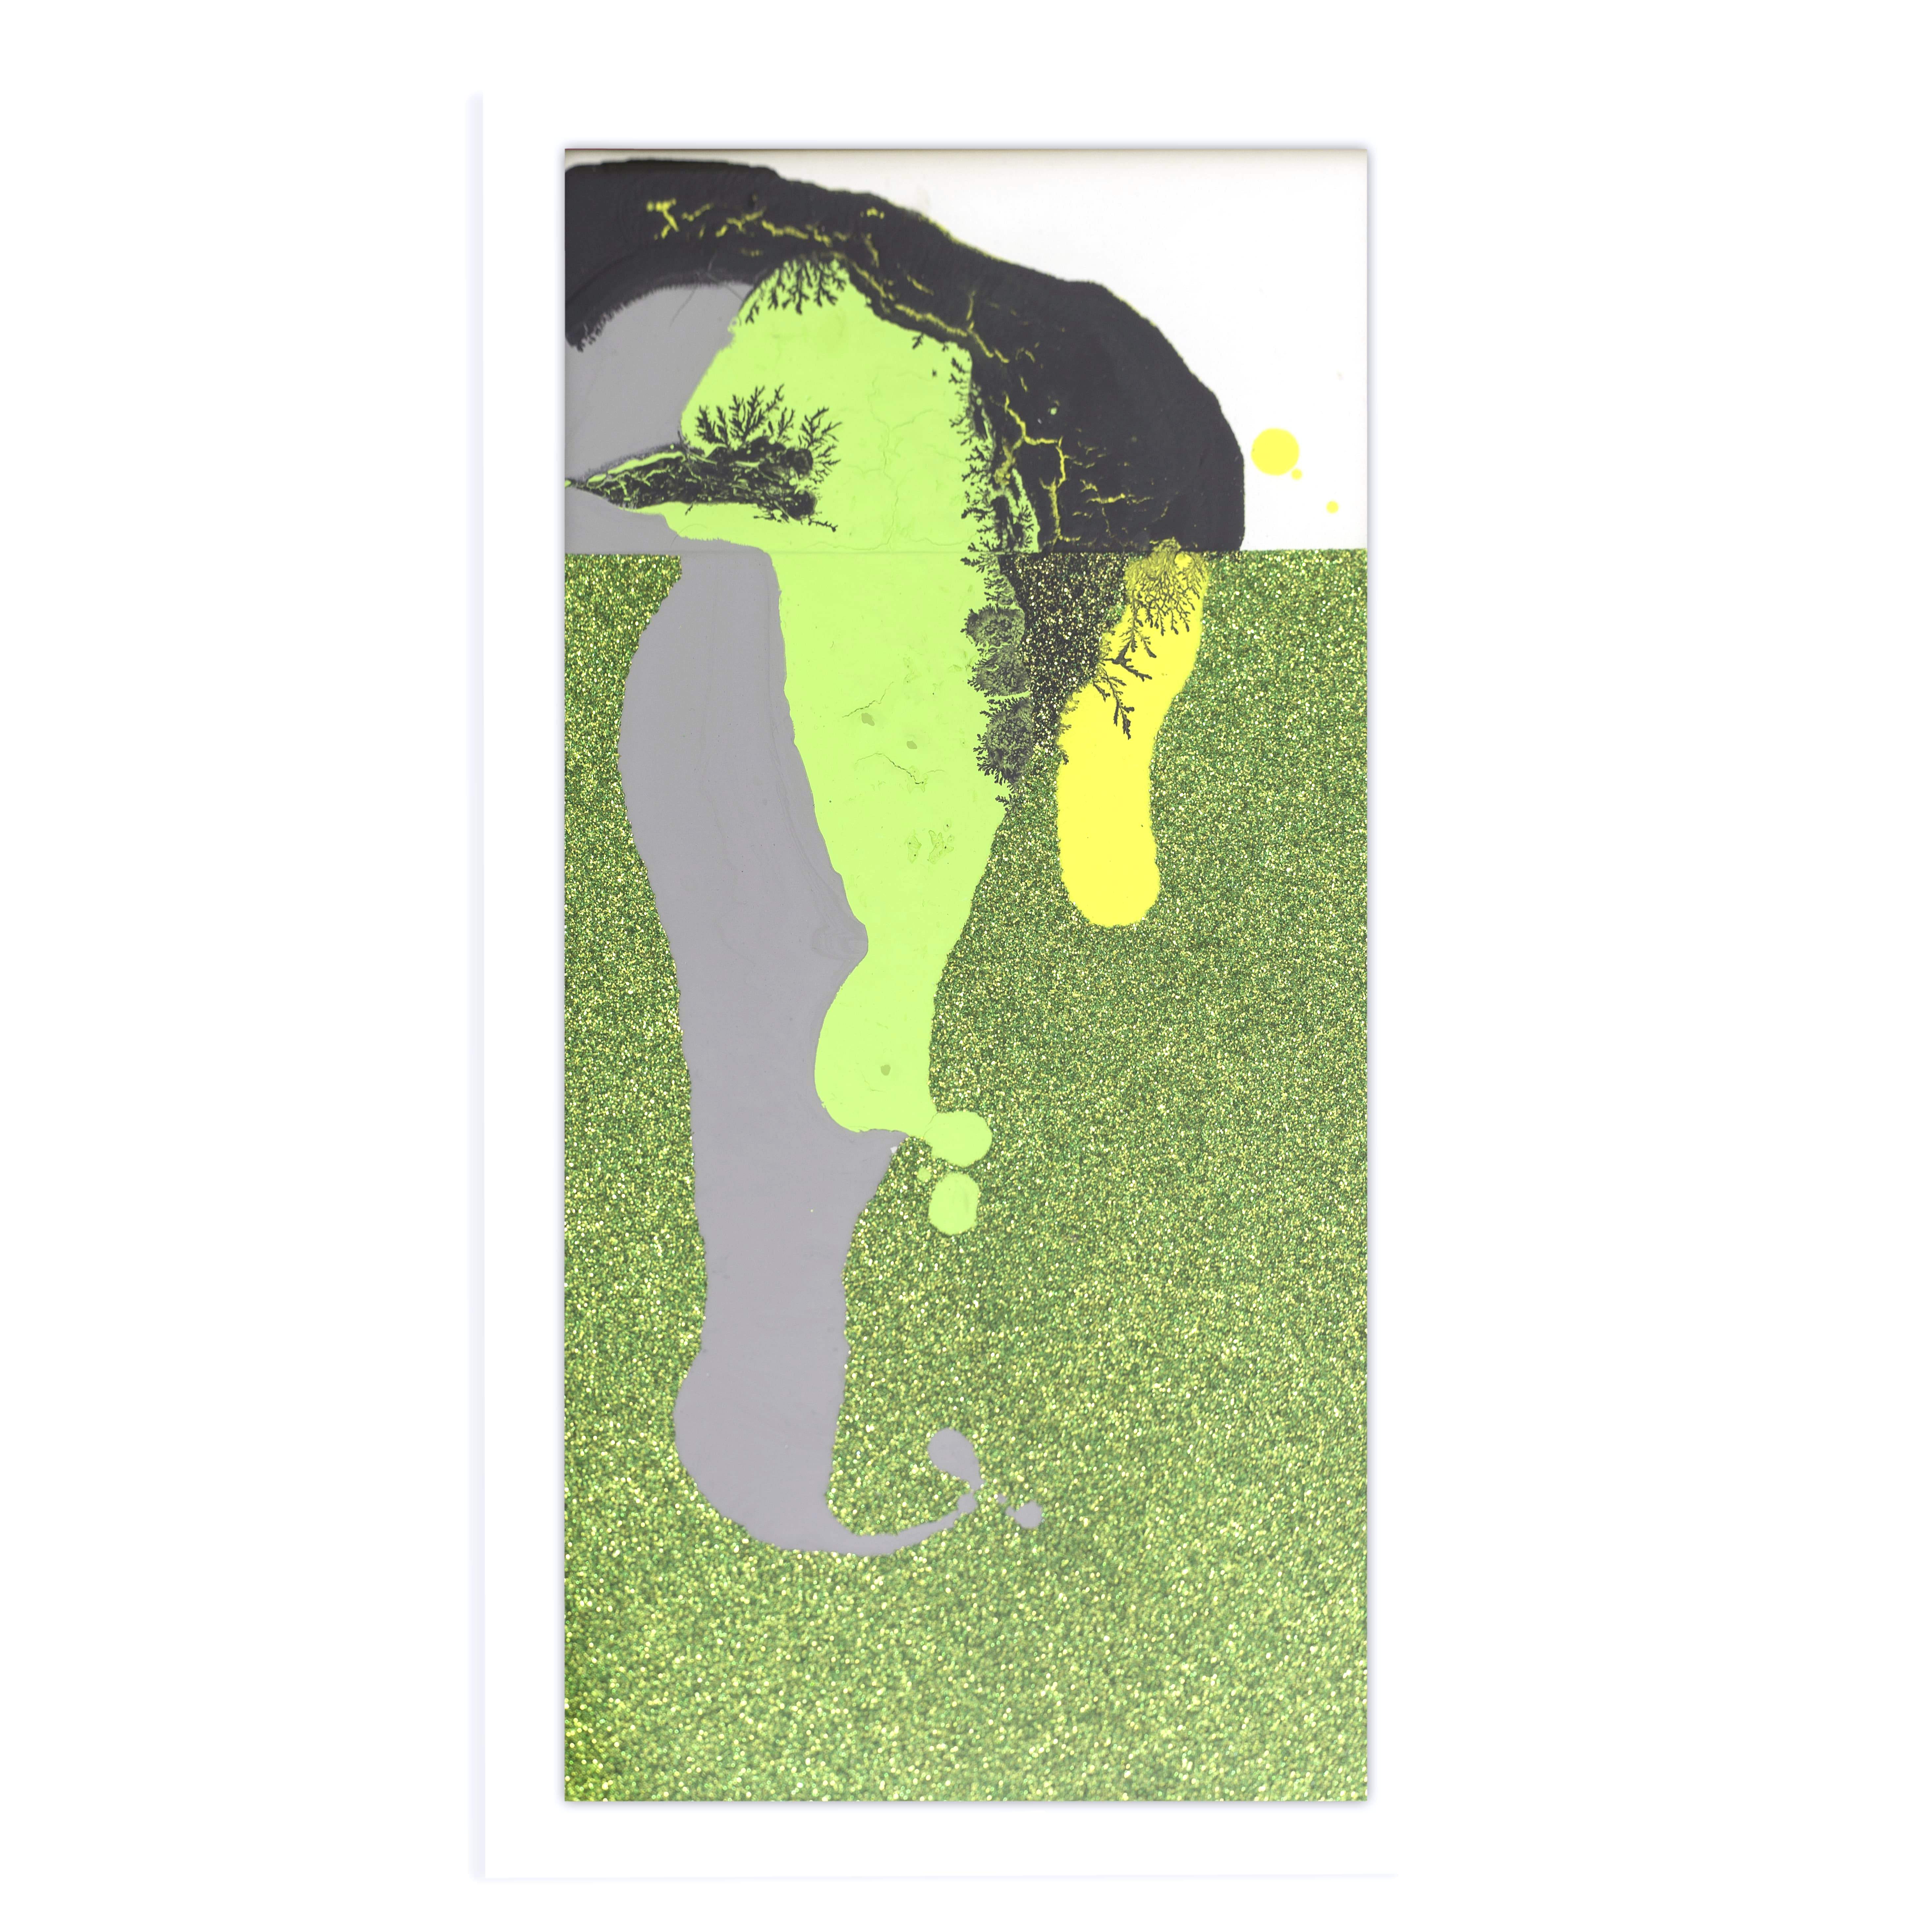 ornitorinco urbano, 2019, tecnica mista su tela, cm 43 x23 - ph. by F. Morlupi